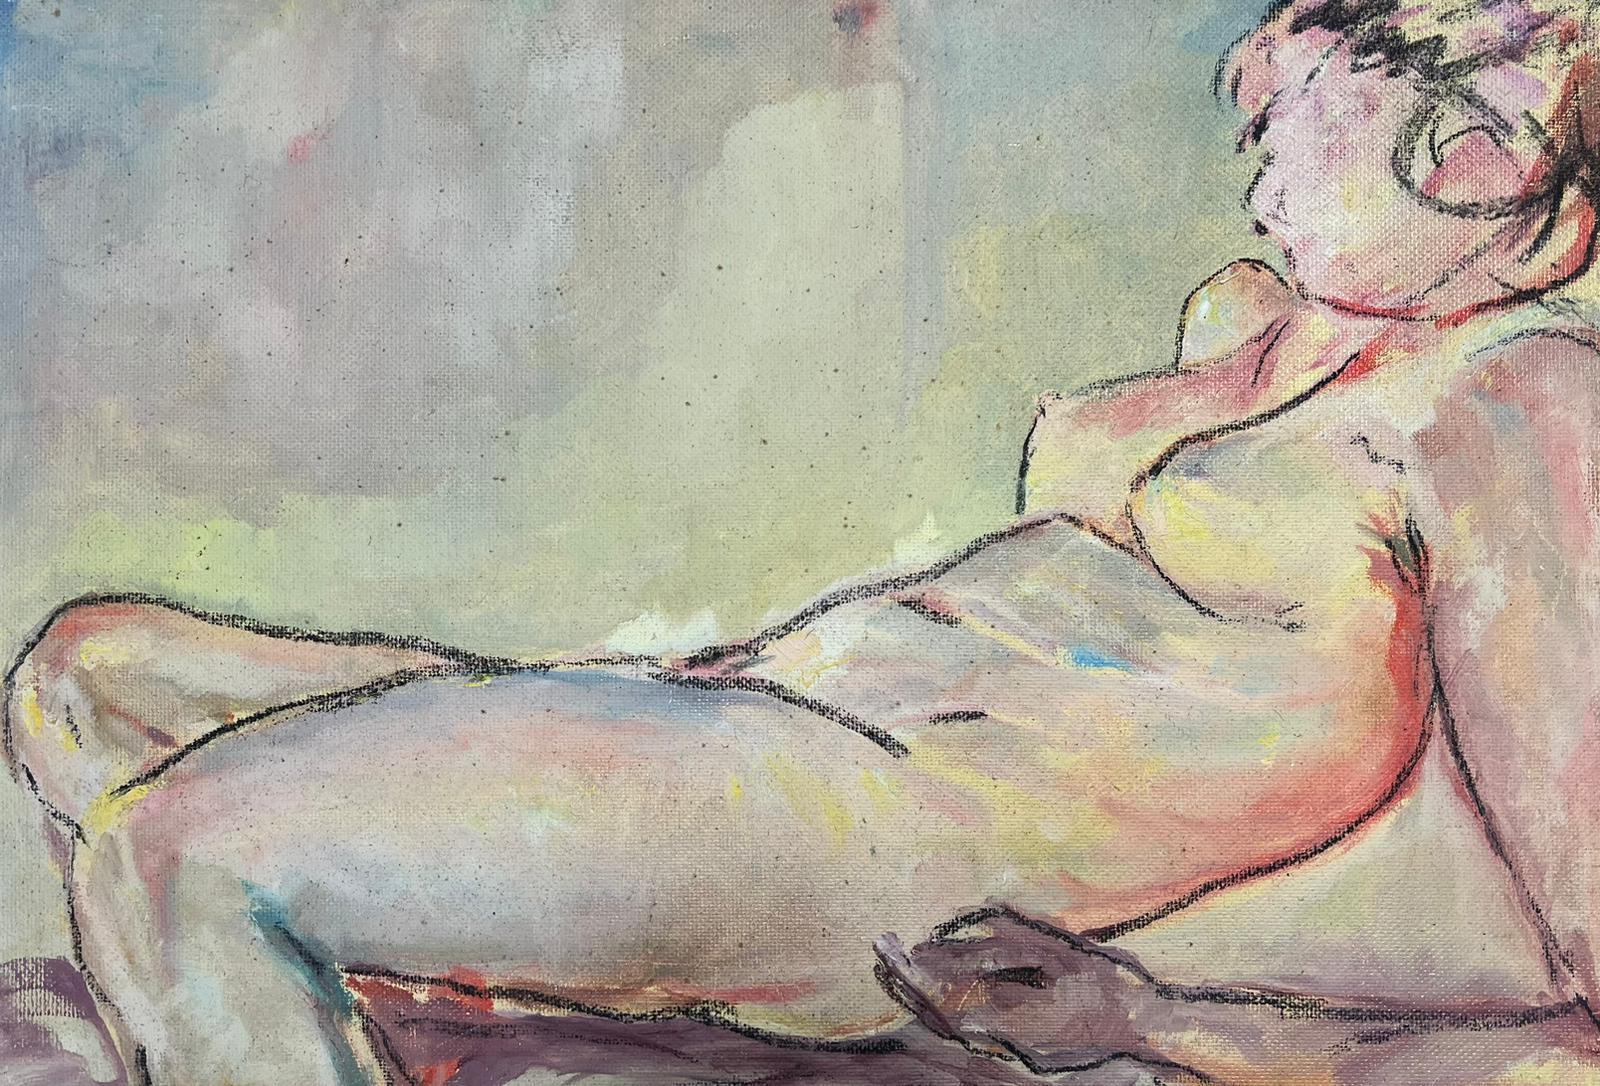 Tableau de modèle nu couché d'une femme allongée du 20ème siècle, peinture à l'huile aux tons terreux beiges